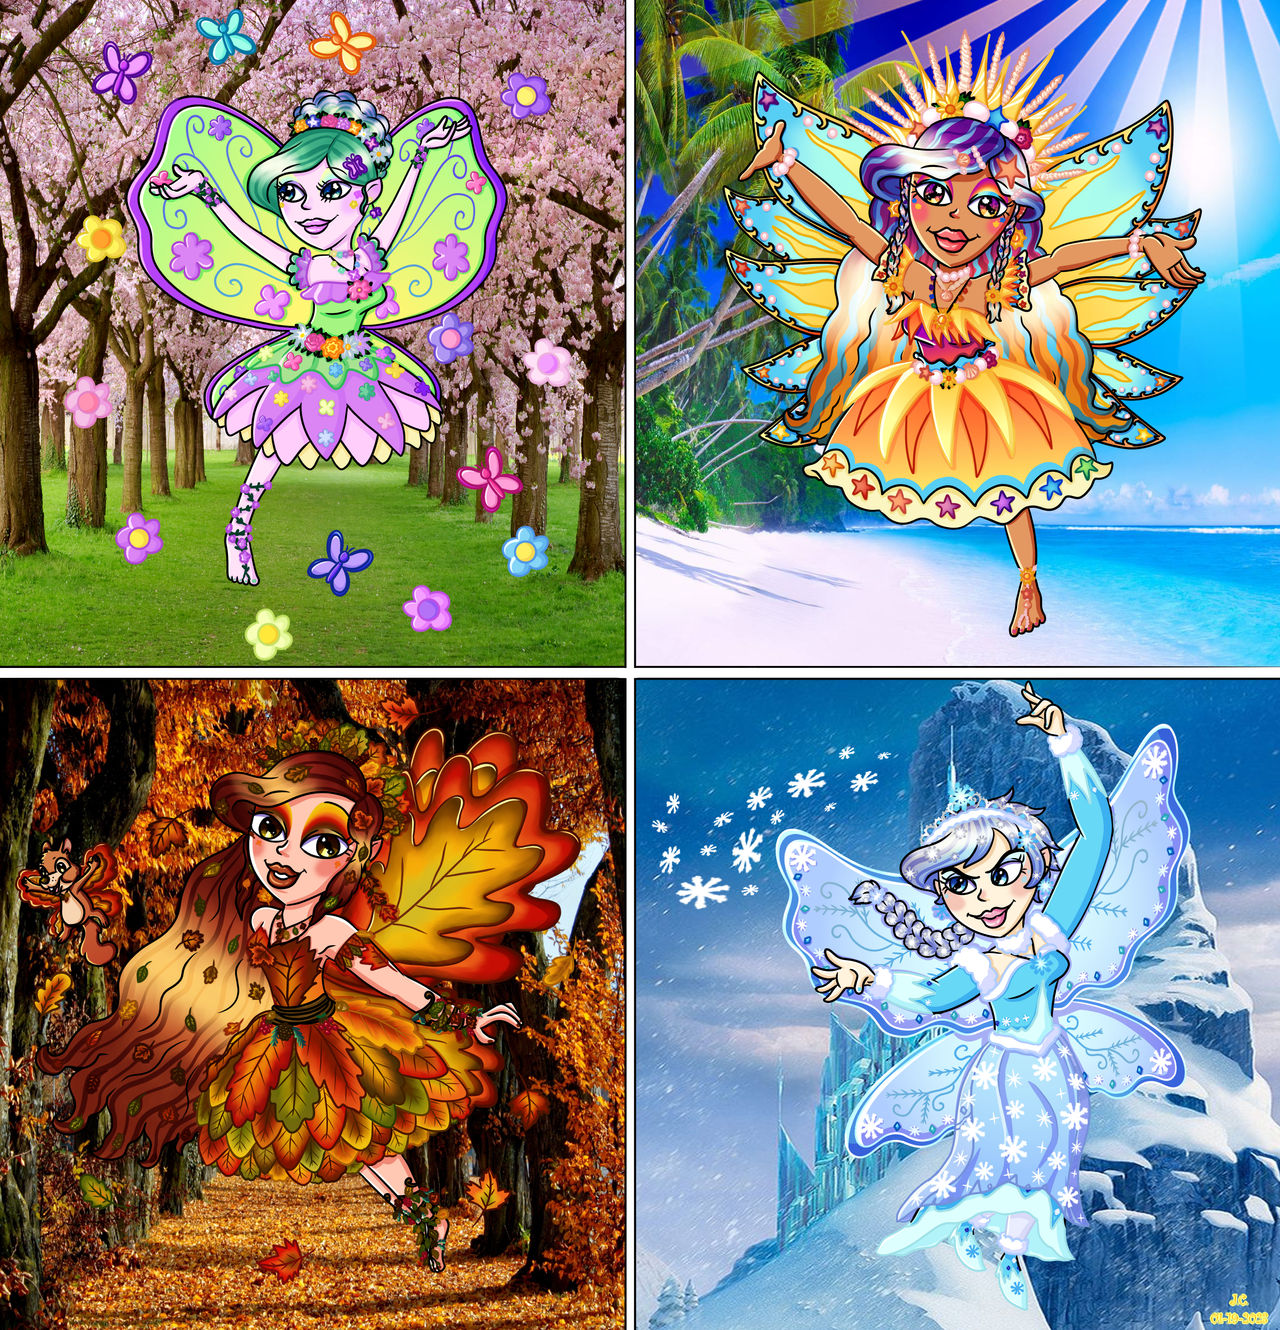 Join the Team - Team $5 Sparkle Fairies